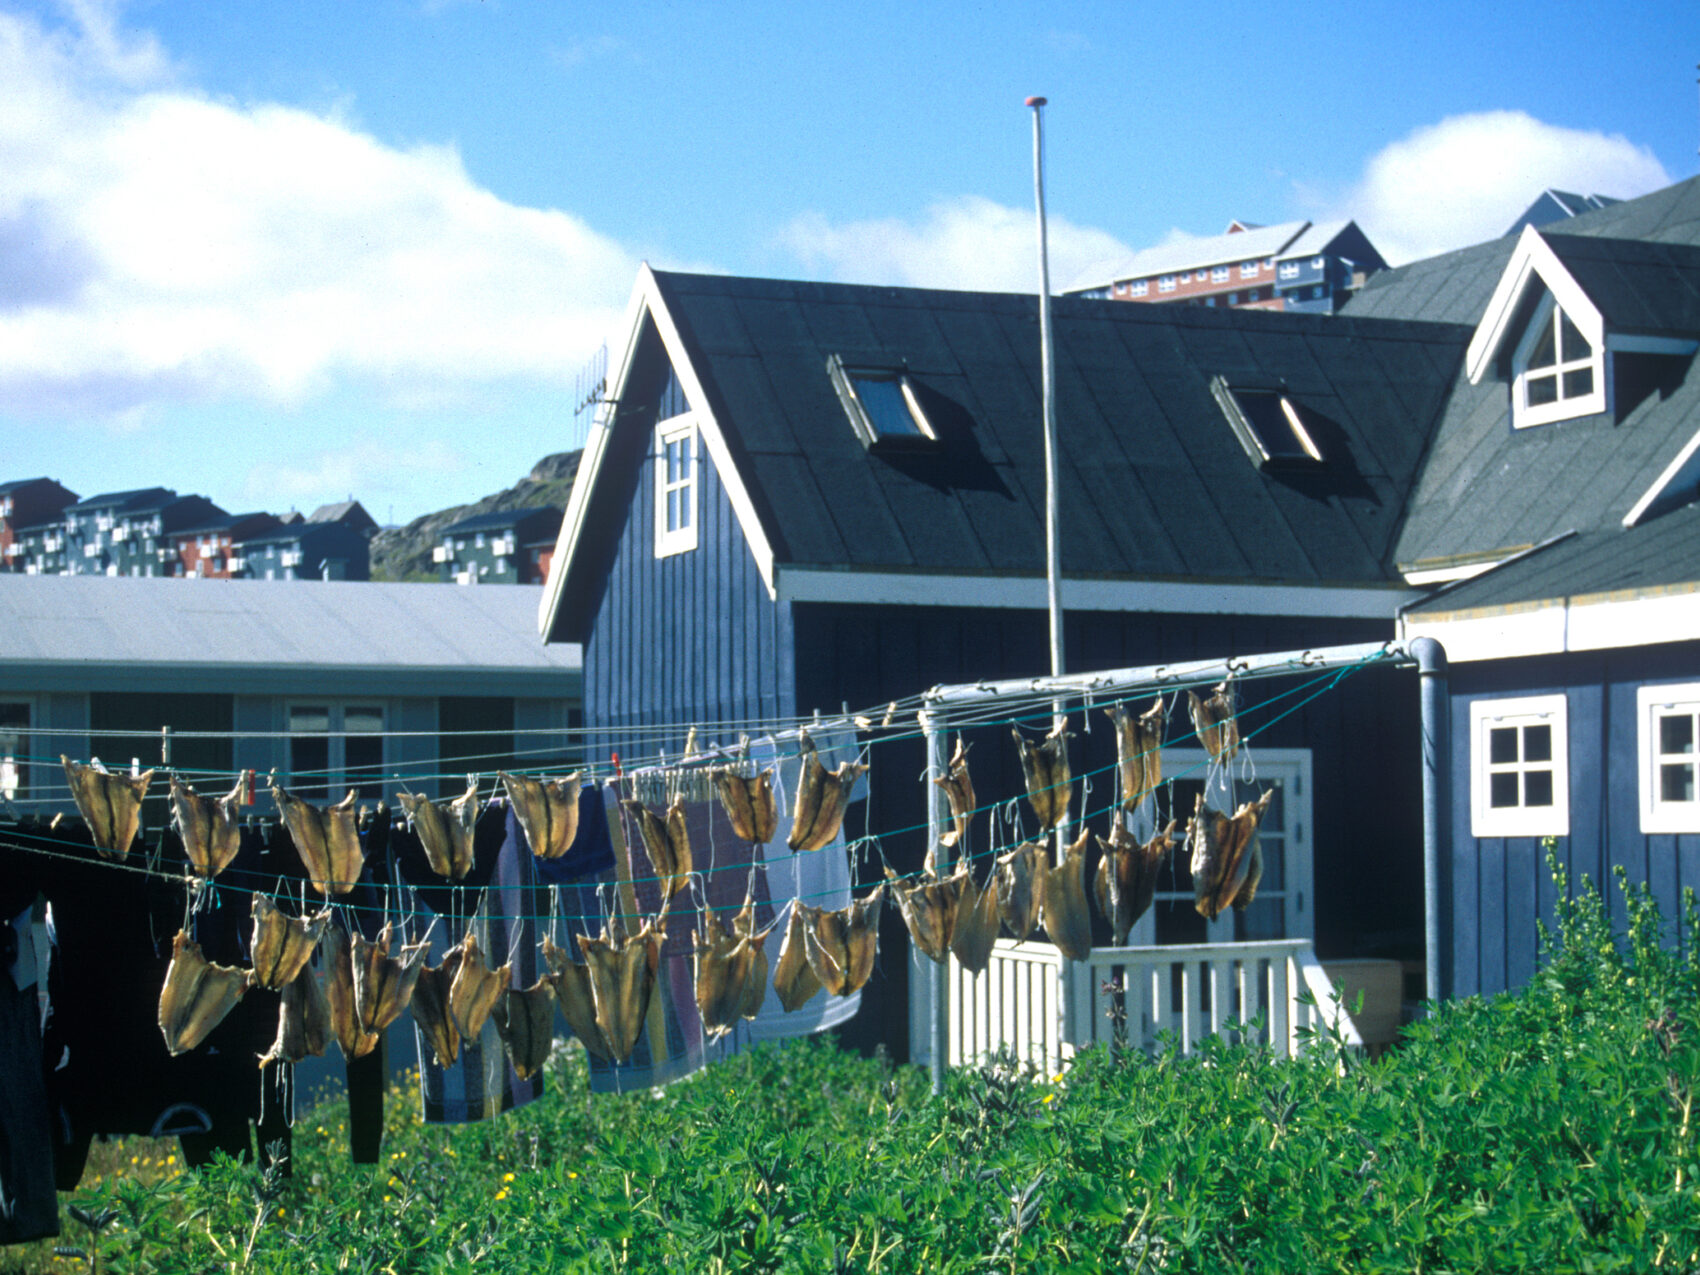 Südgrönland: Siedlung Qaqortoq
Blau-weißes Haus mit Fischen, die an der Wäscheleine aufgehängt sind.